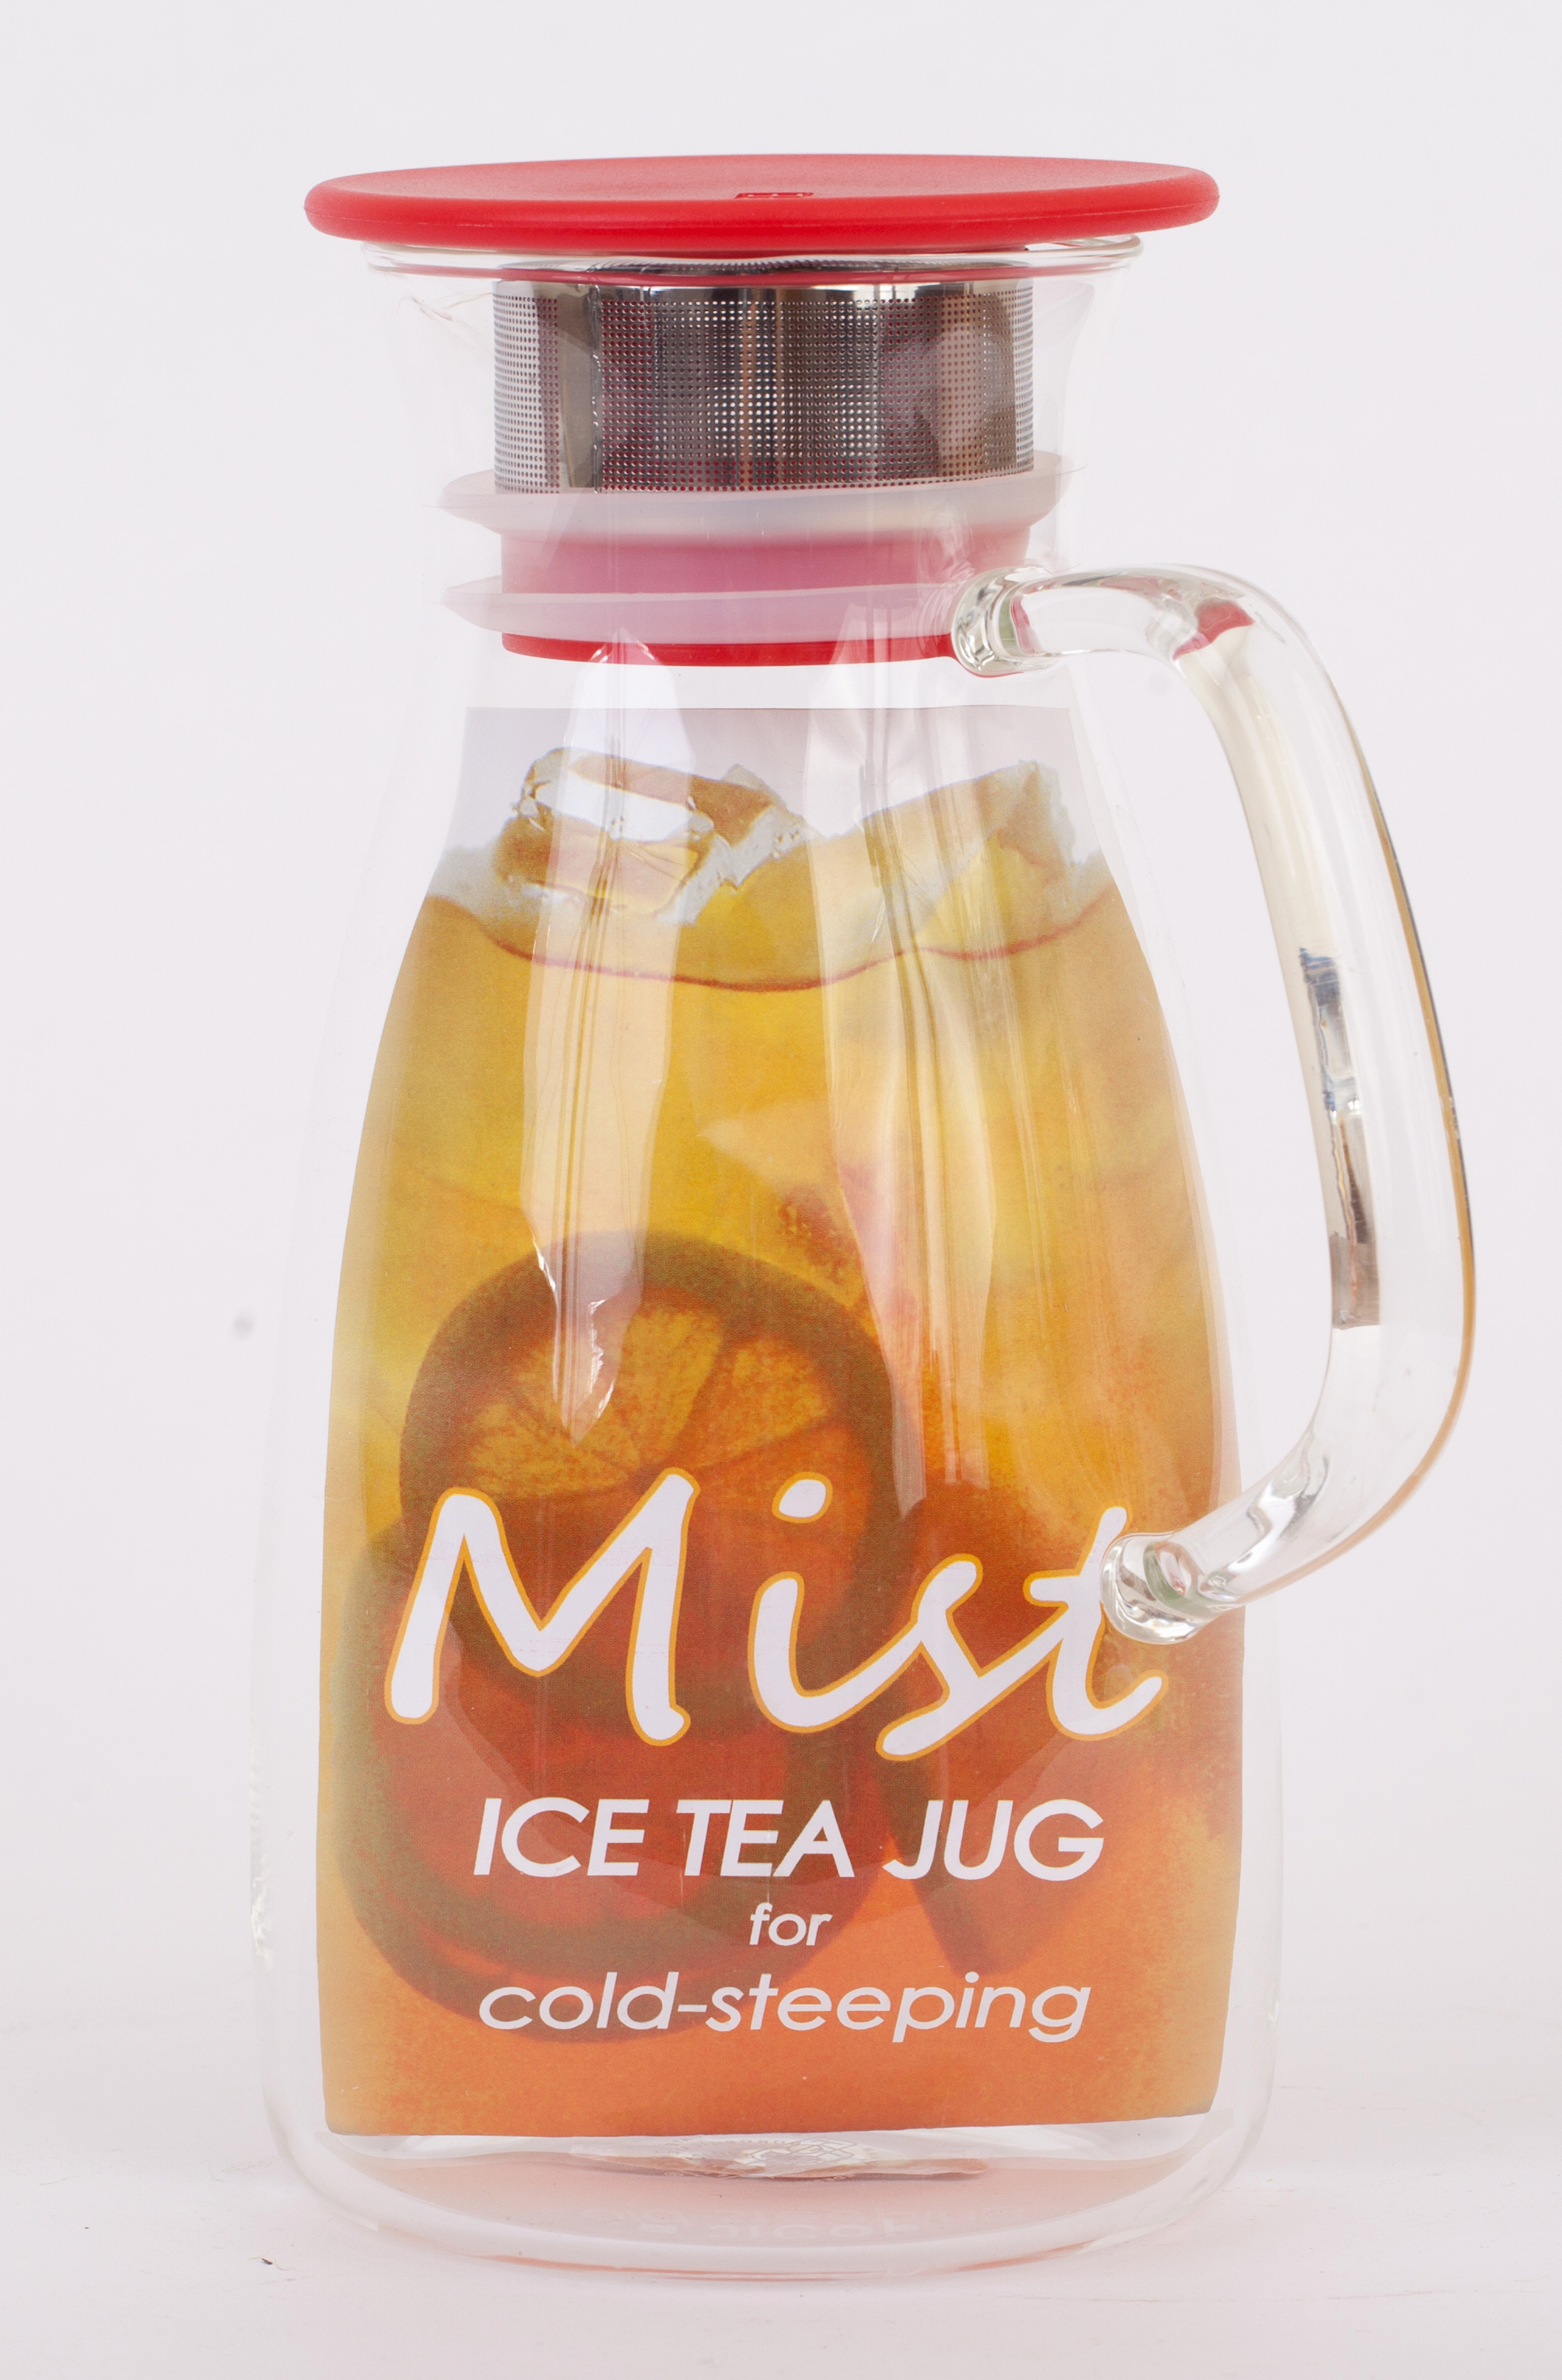 Mist Iced Tea Jug